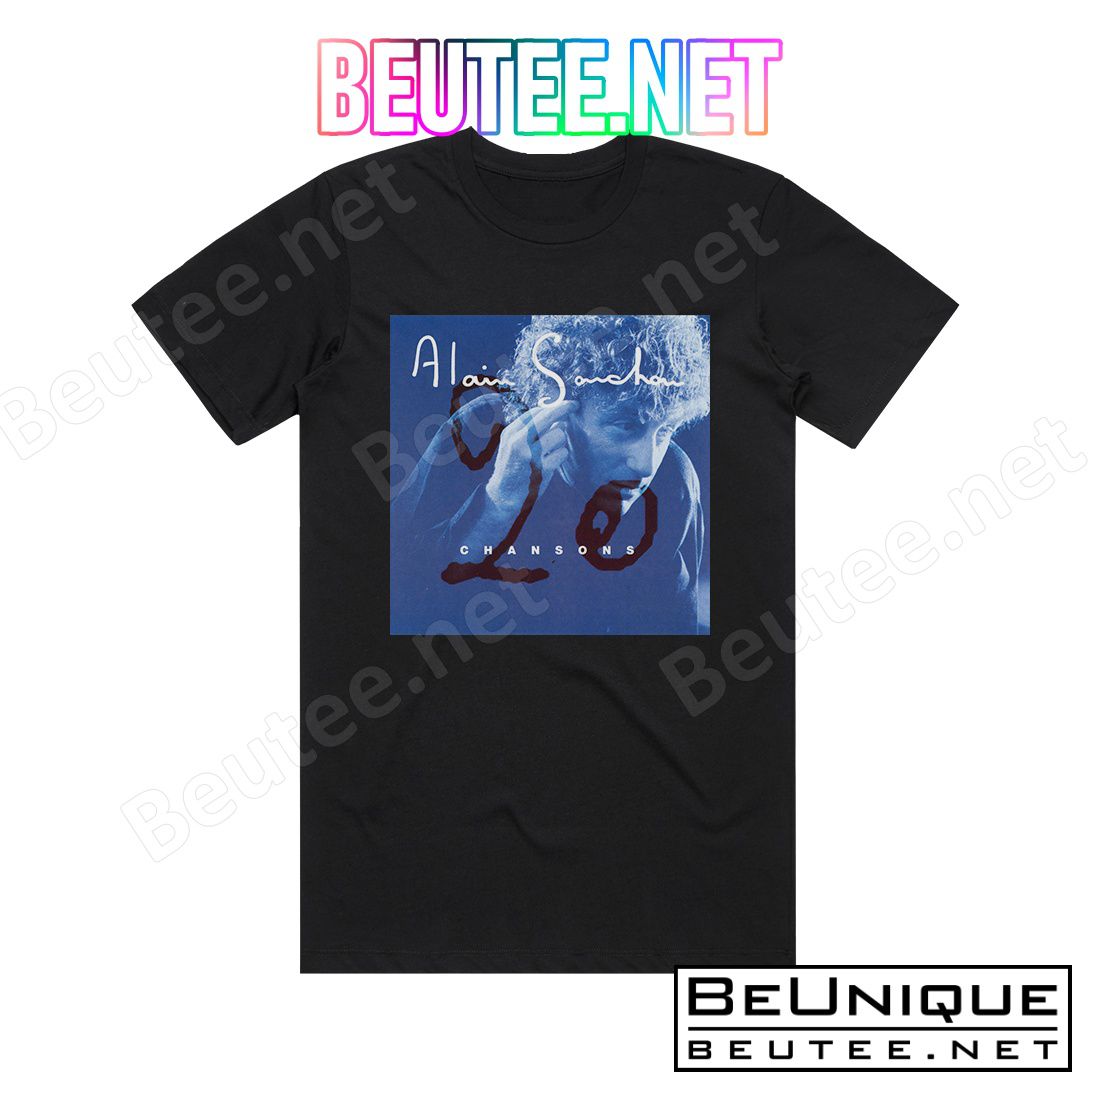 Alain Souchon 20 Chansons Album Cover T-Shirt